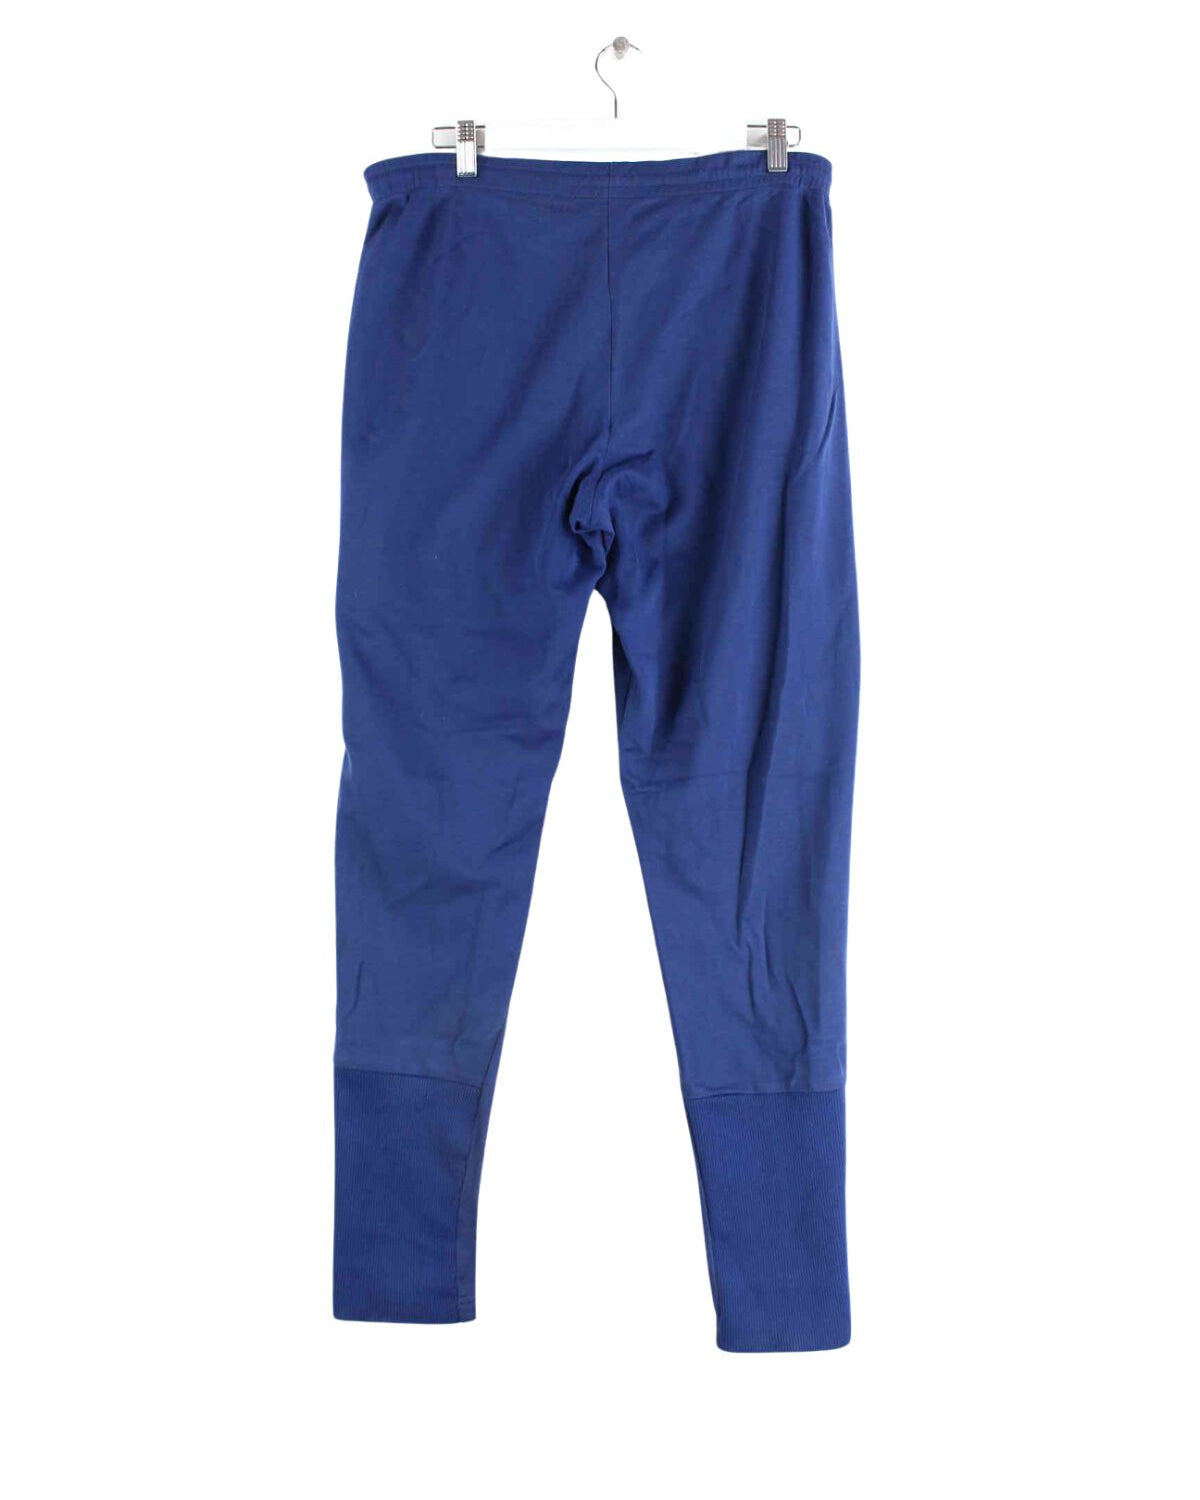 Adidas 80s Vintage Trefoil Track Pants Blau S (back image)